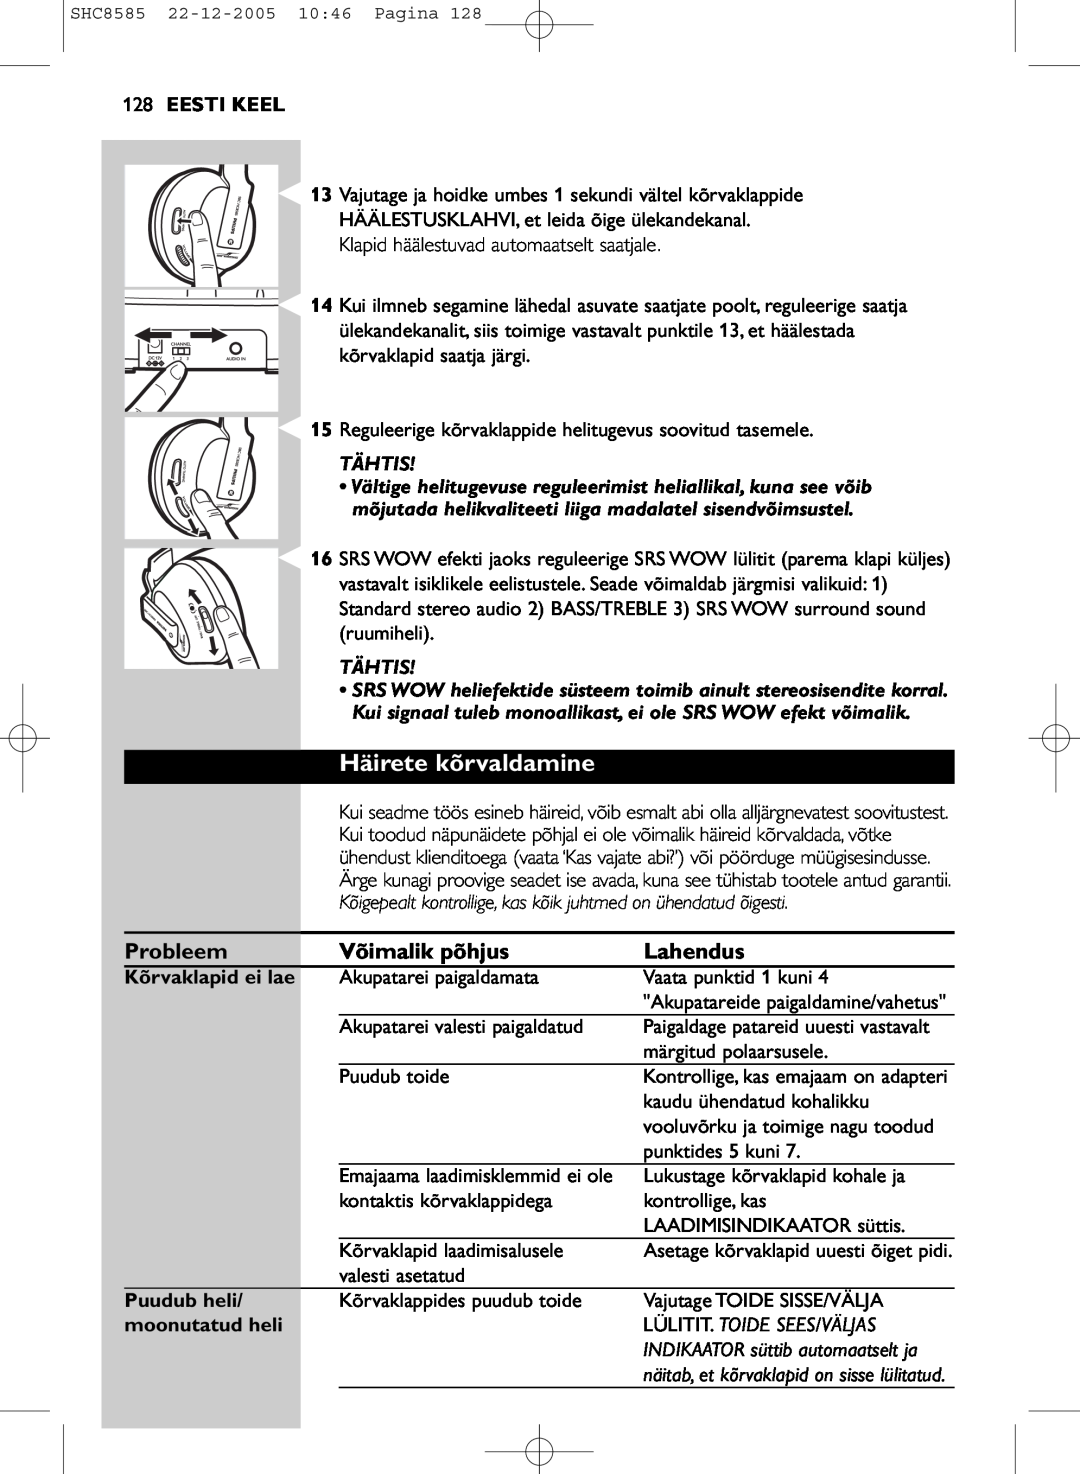 Philips SHC8585/05 manual Häirete kõrvaldamine, 128EESTI KEEL, Kõrvaklapid ei lae, Puudub heli, moonutatud heli 